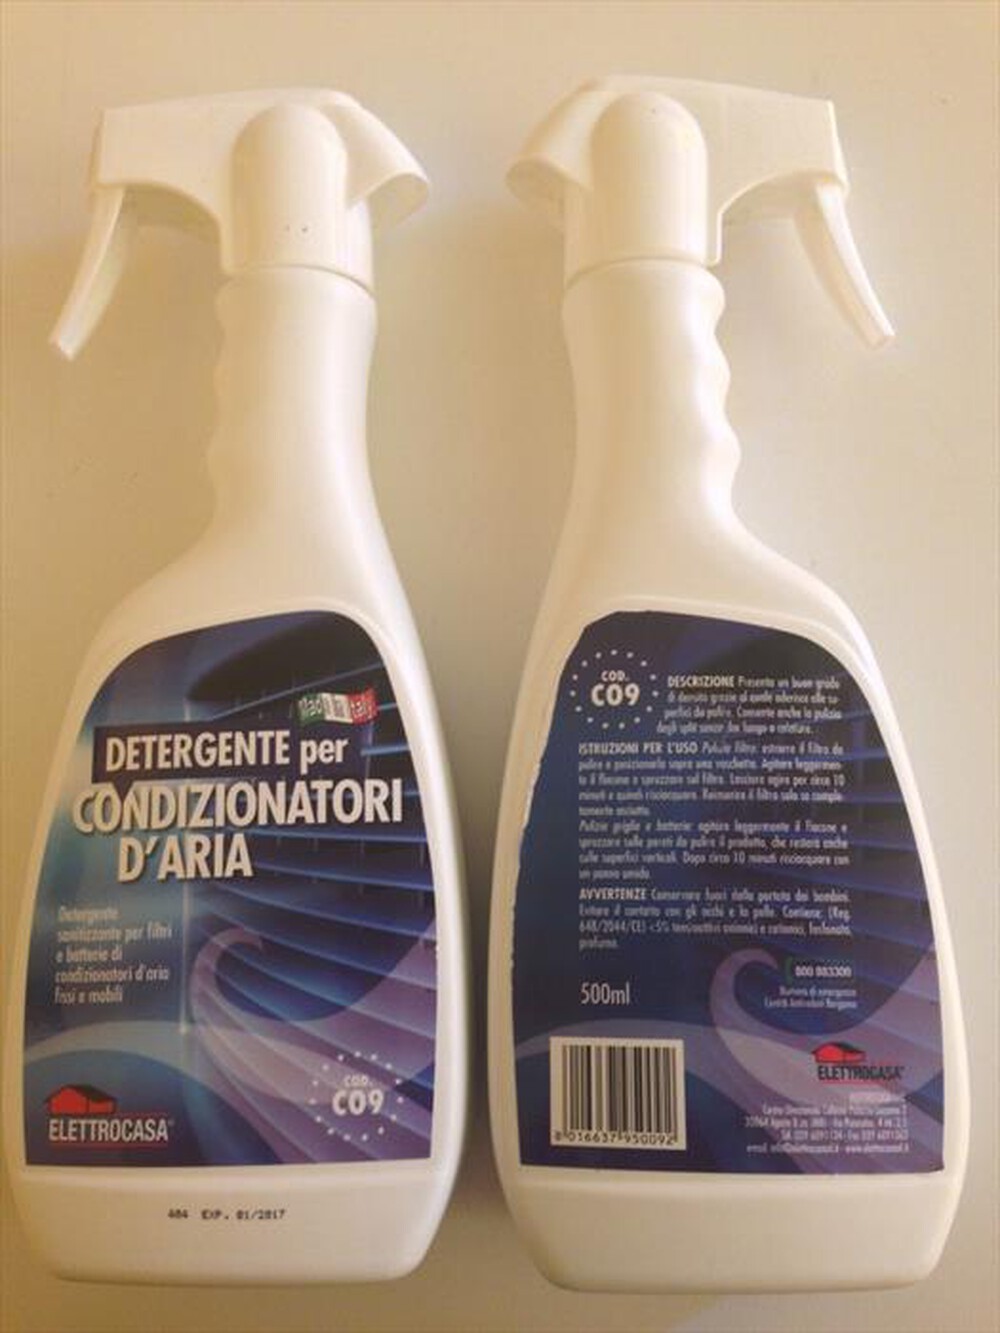 "ELETTROCASA - CO9 - Detergente per condizionatori"